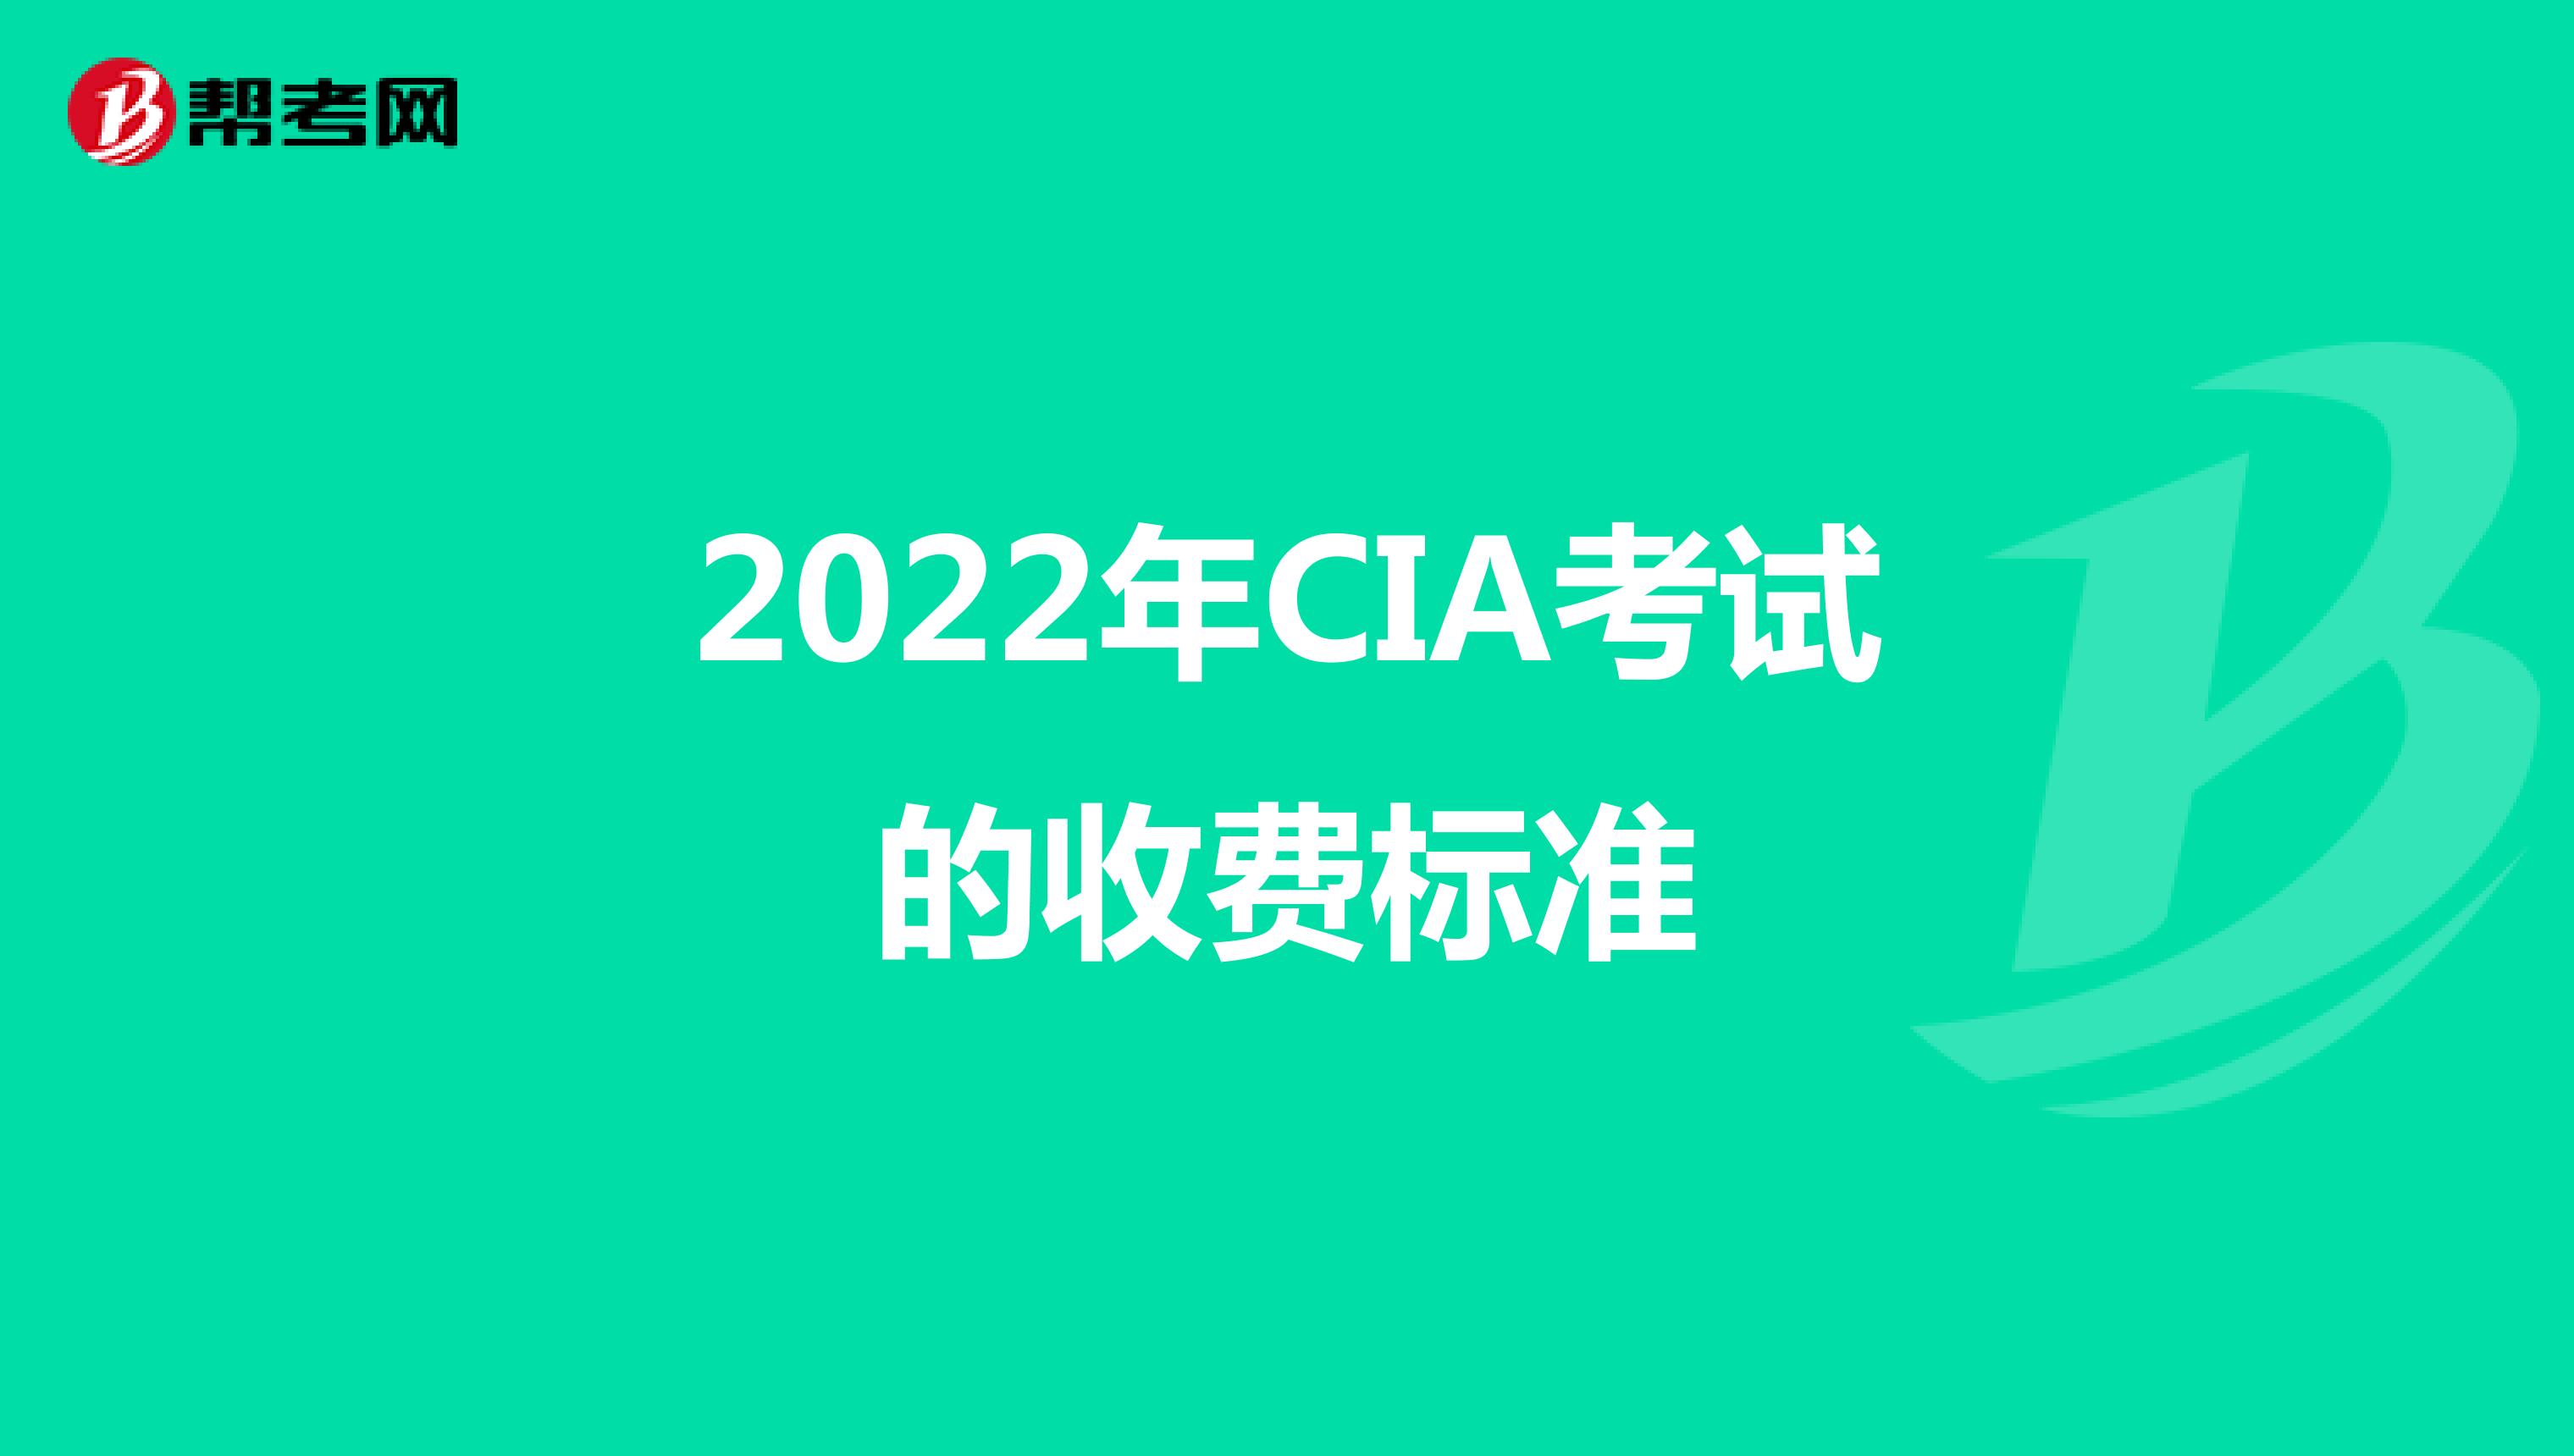 2022年CIA考试的收费标准